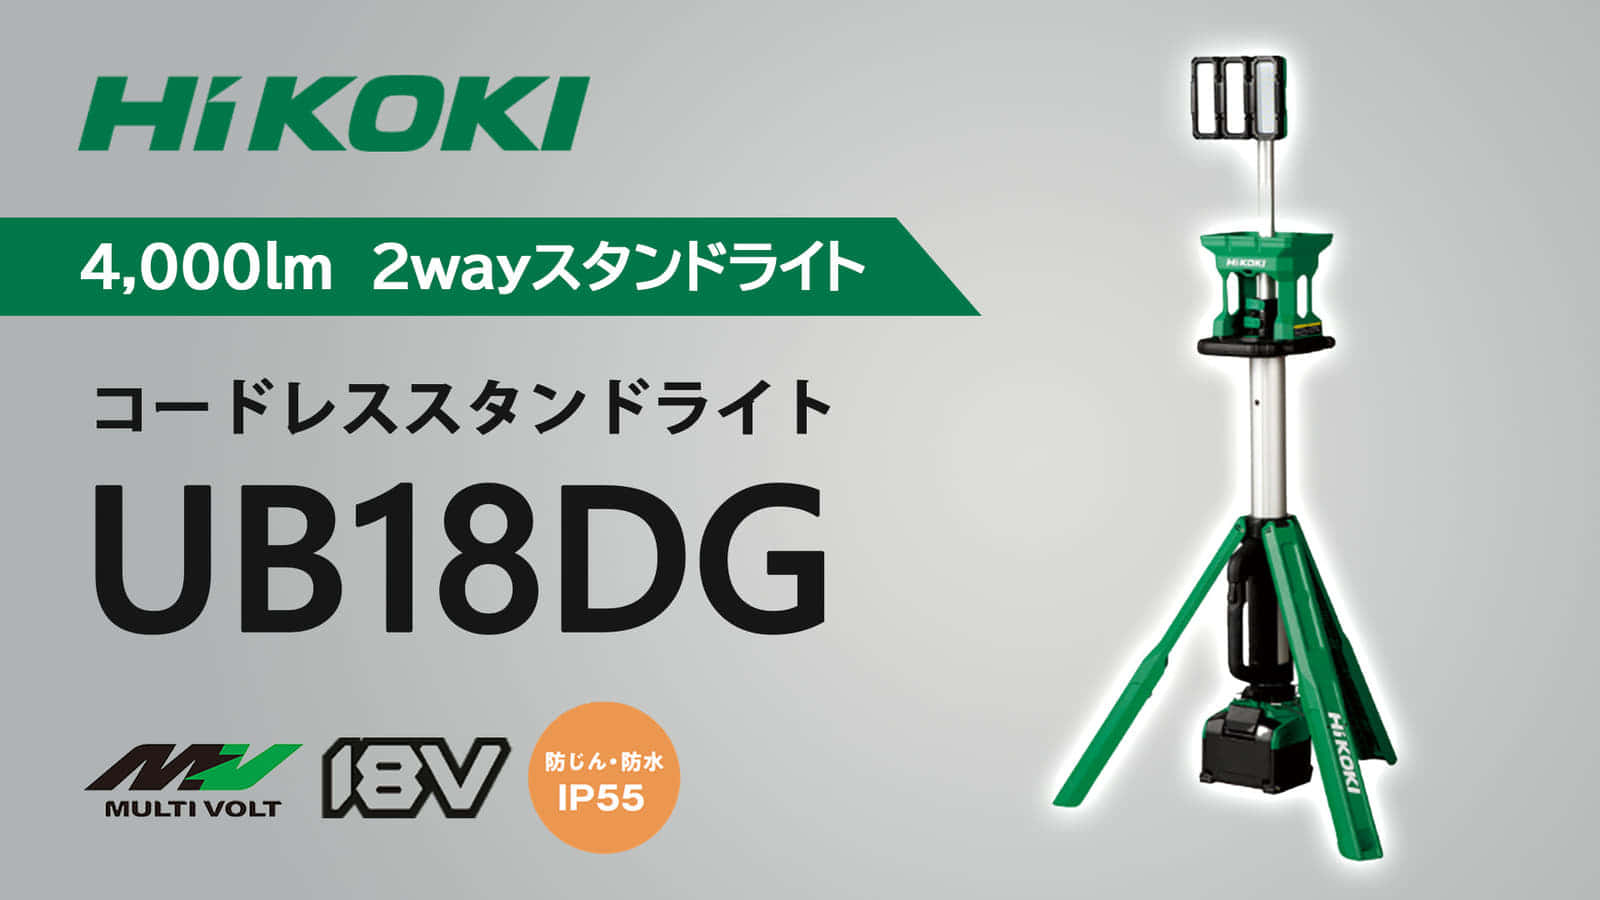 HiKOKI コードレススタンドライト UB18DGを発売、上から明るく照らせて2way電源対応